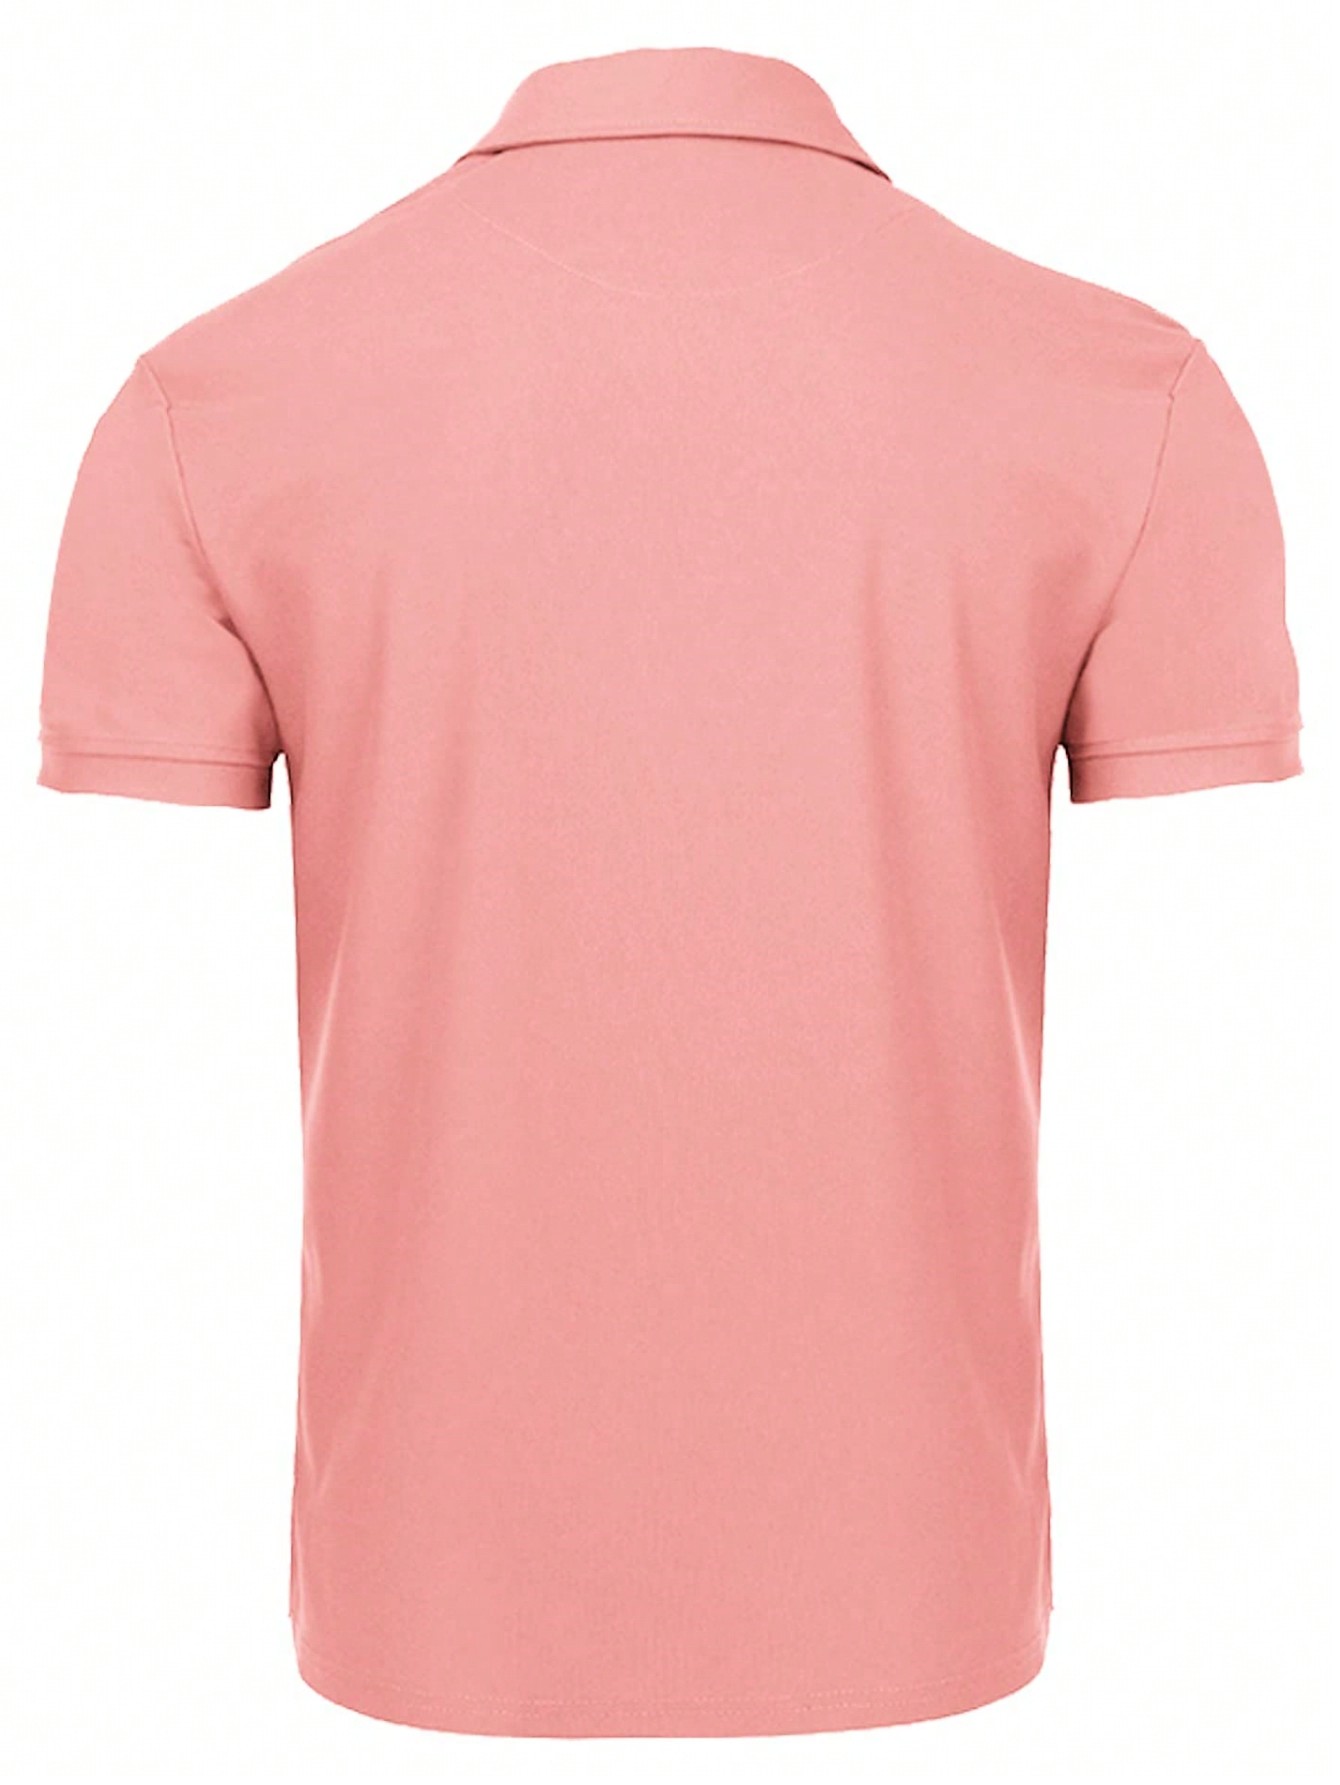 Мужская рубашка поло с коротким рукавом для отдыха, арбуз розовый футболка поло мужская быстросохнущая дышащая тенниска для гольфа модная майка с коротким рукавом лето